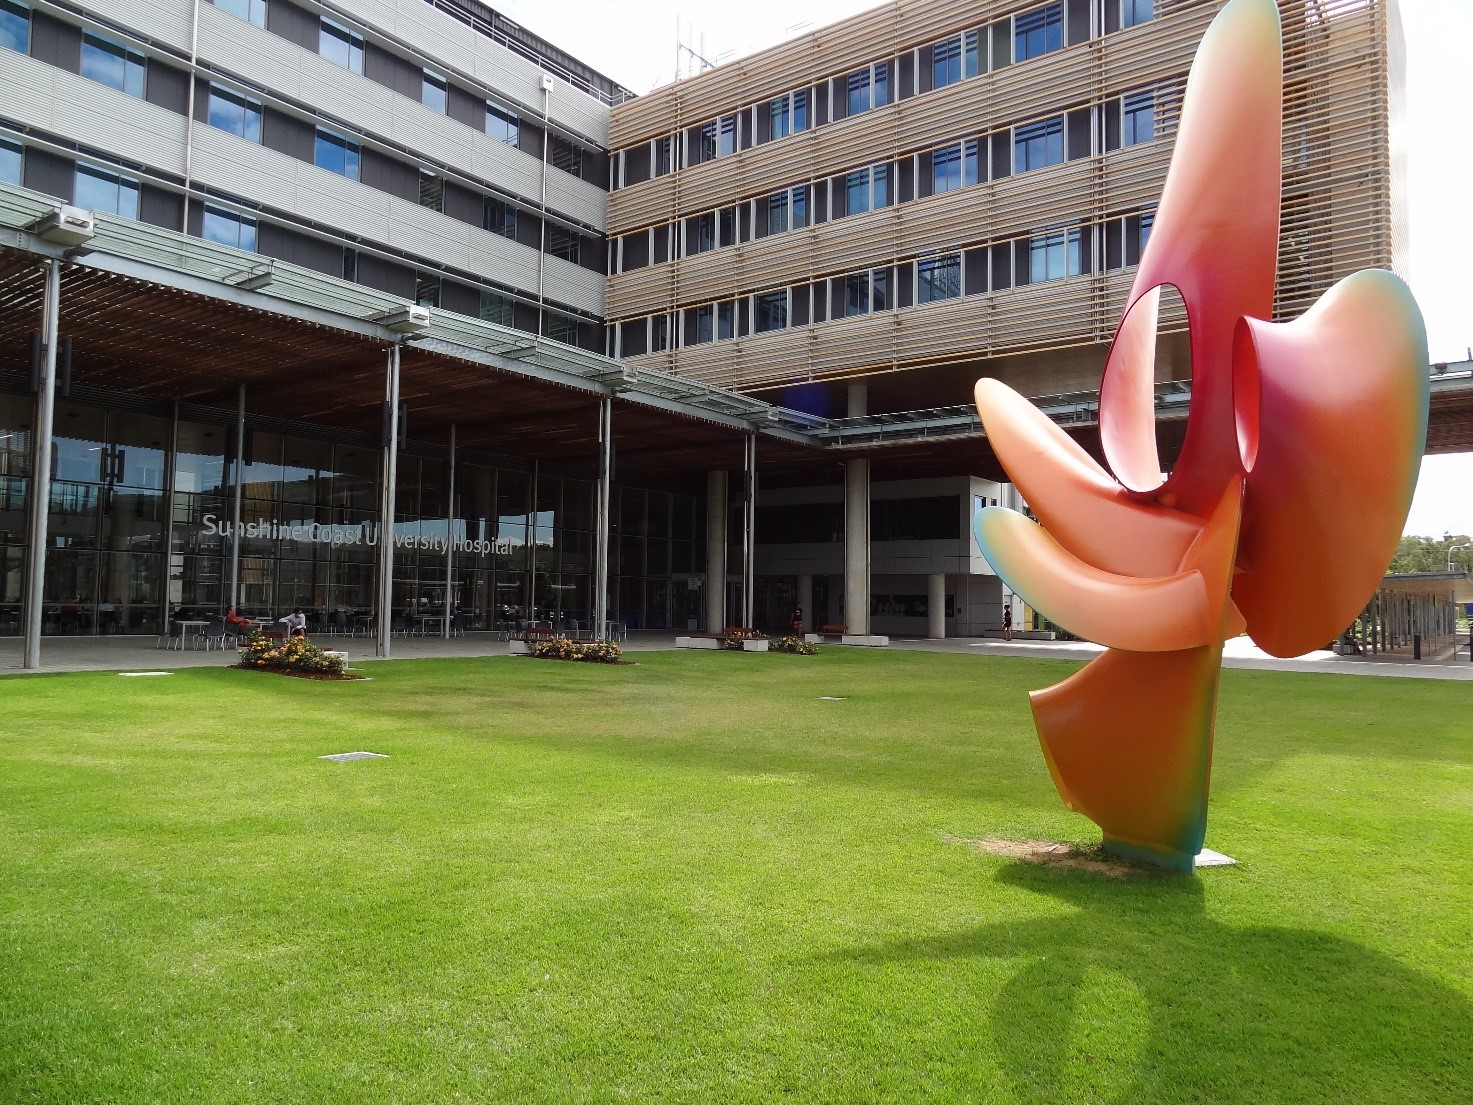 Systematic - Sunshine Coast University Hospital